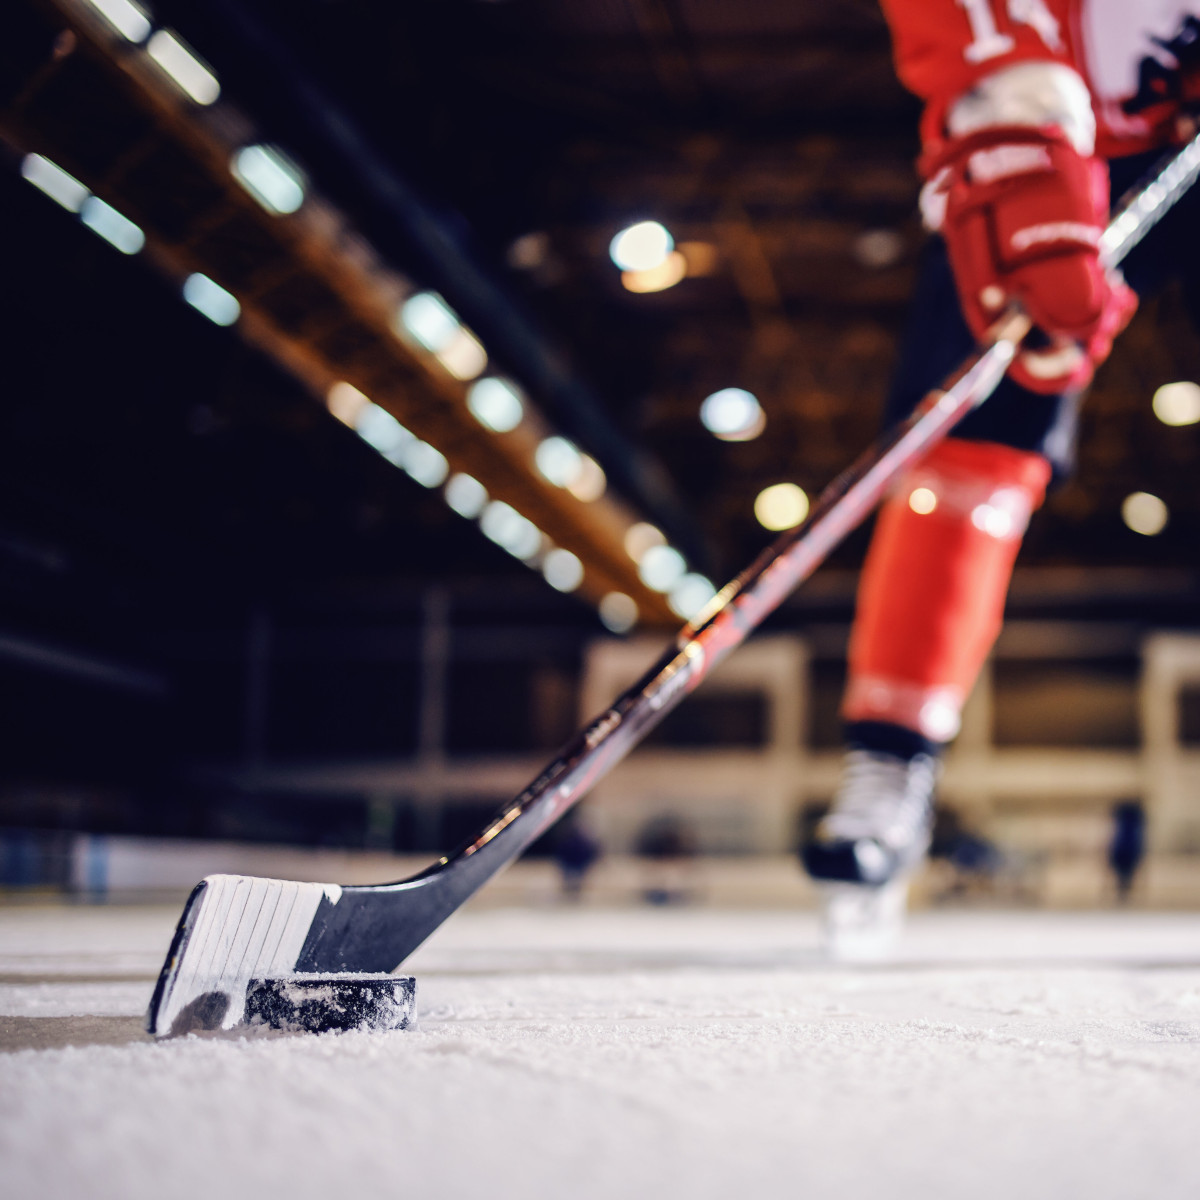 Nahaufnahme eines Hockeyschlägers mit Puk auf dem Eis, im Hintergrund sind Beine des Spielers zu erkennen